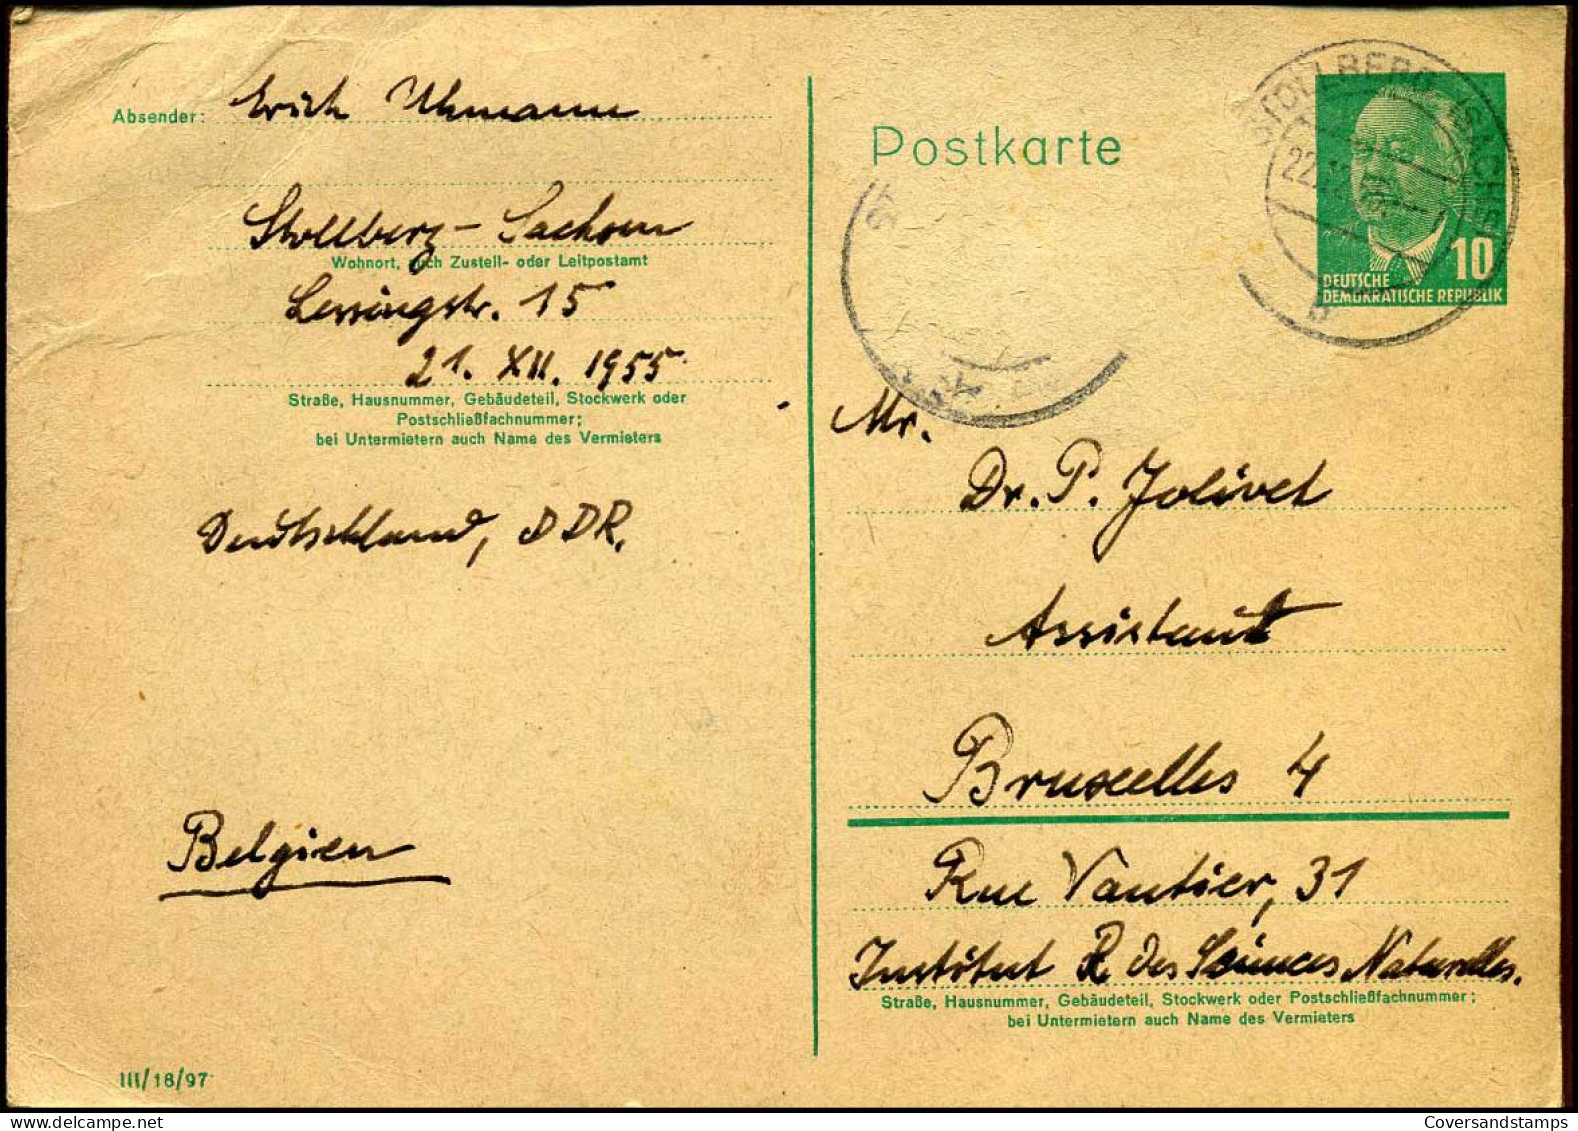 Postkarte : "Humboldt-Universität Zu Berlin, Zoologisches Museum" - Postkarten - Gebraucht